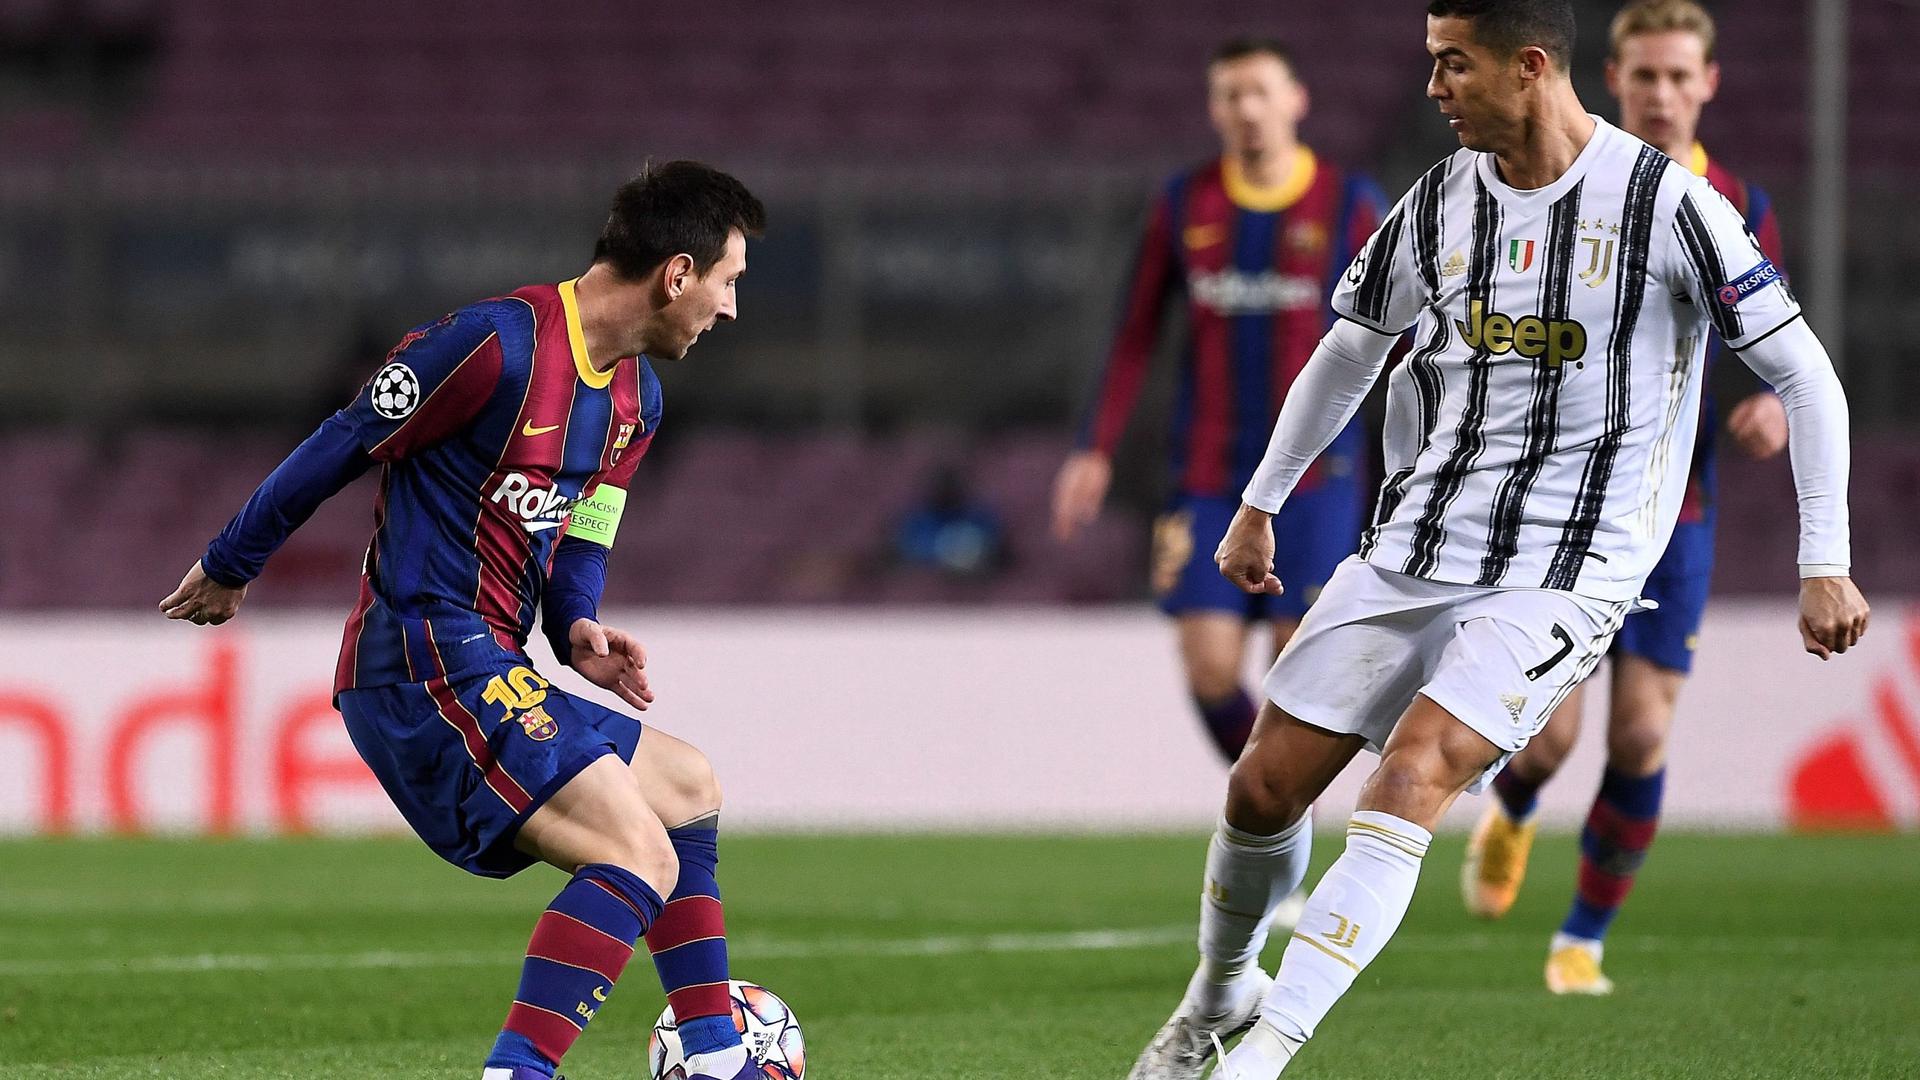 Cristiano Ronaldo e Leonel Messi em campo, num jogo entre a Juventus e o Barcelona.